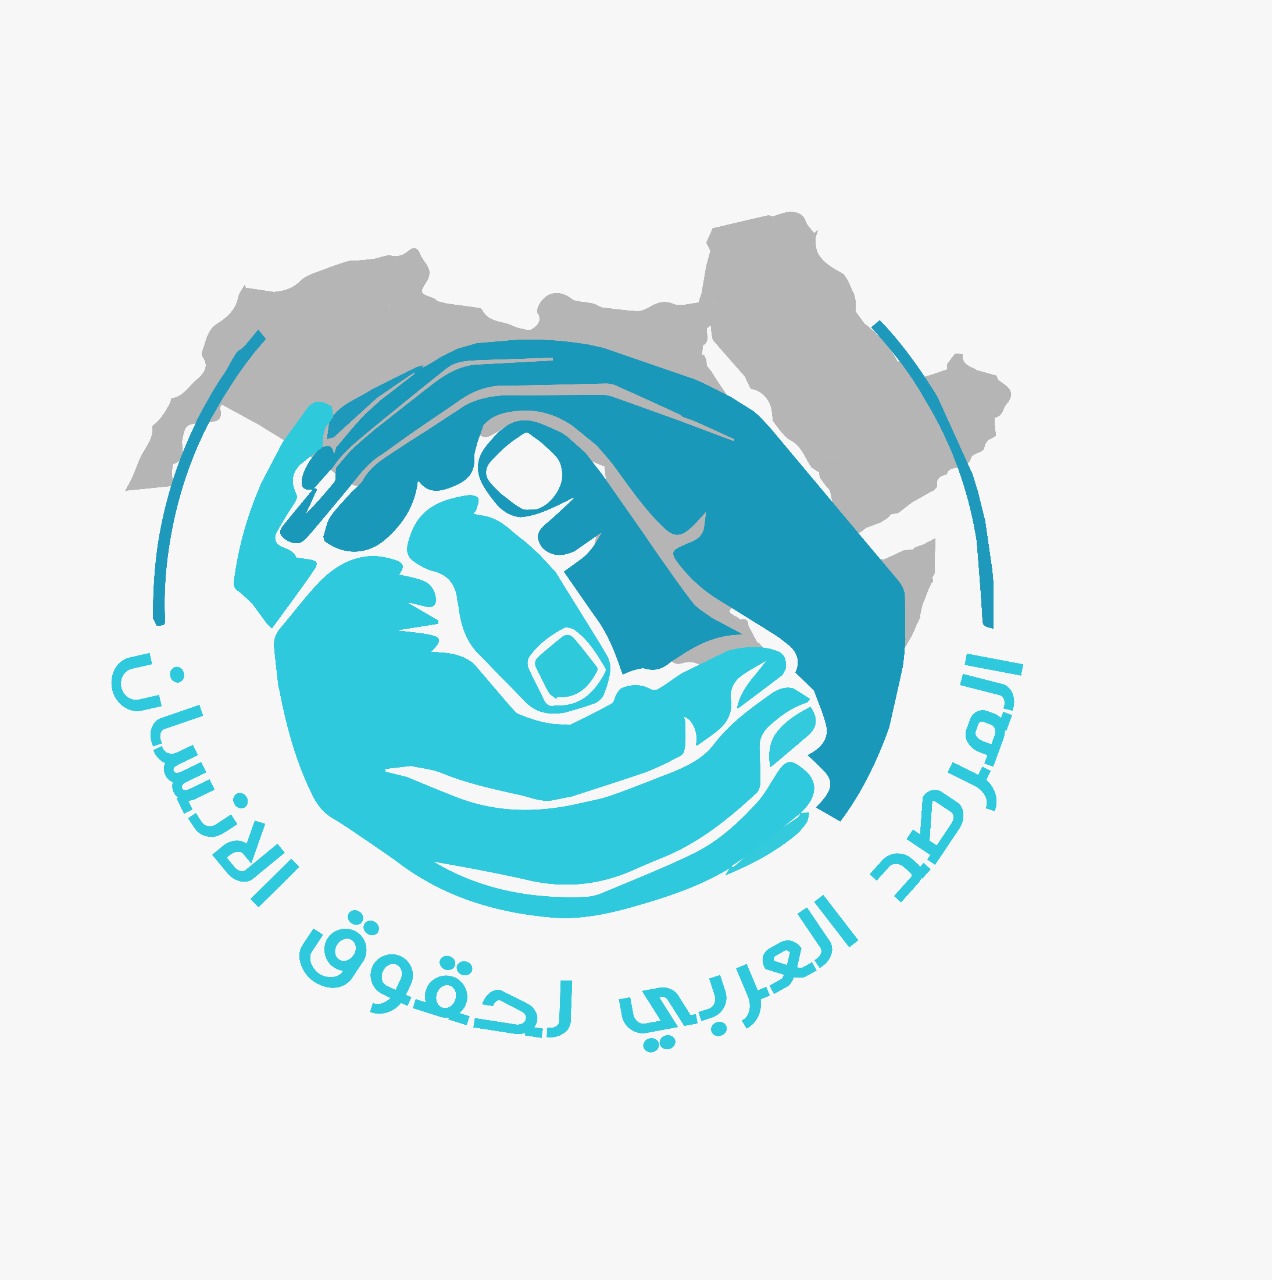 المرصد العربي يشيد بالتطورات الإيجابية في ملف حقوق الإنسان العربي